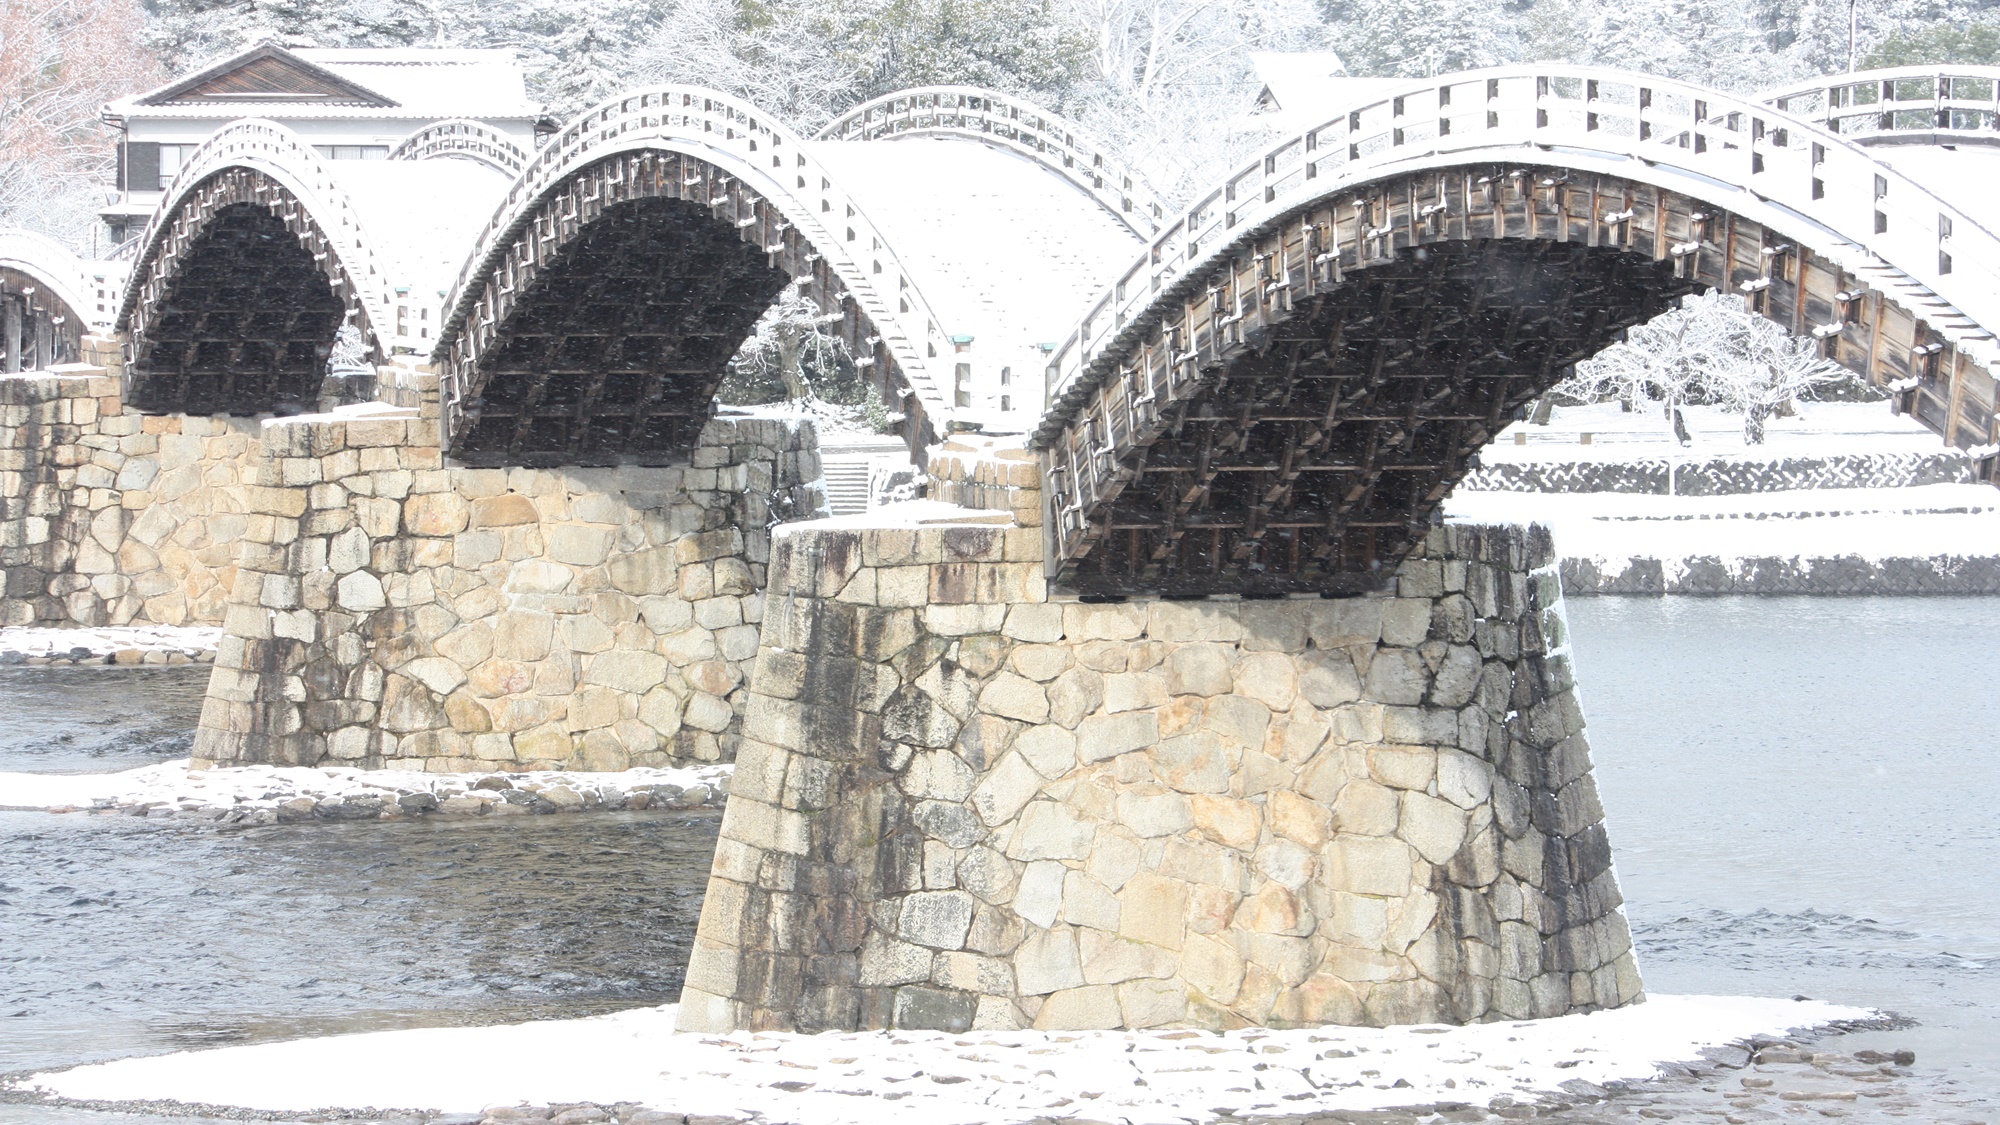 【お部屋からの眺望】雪舞う錦帯橋も絶景。静寂と美しさが調和する風景をぜひご覧ください。　